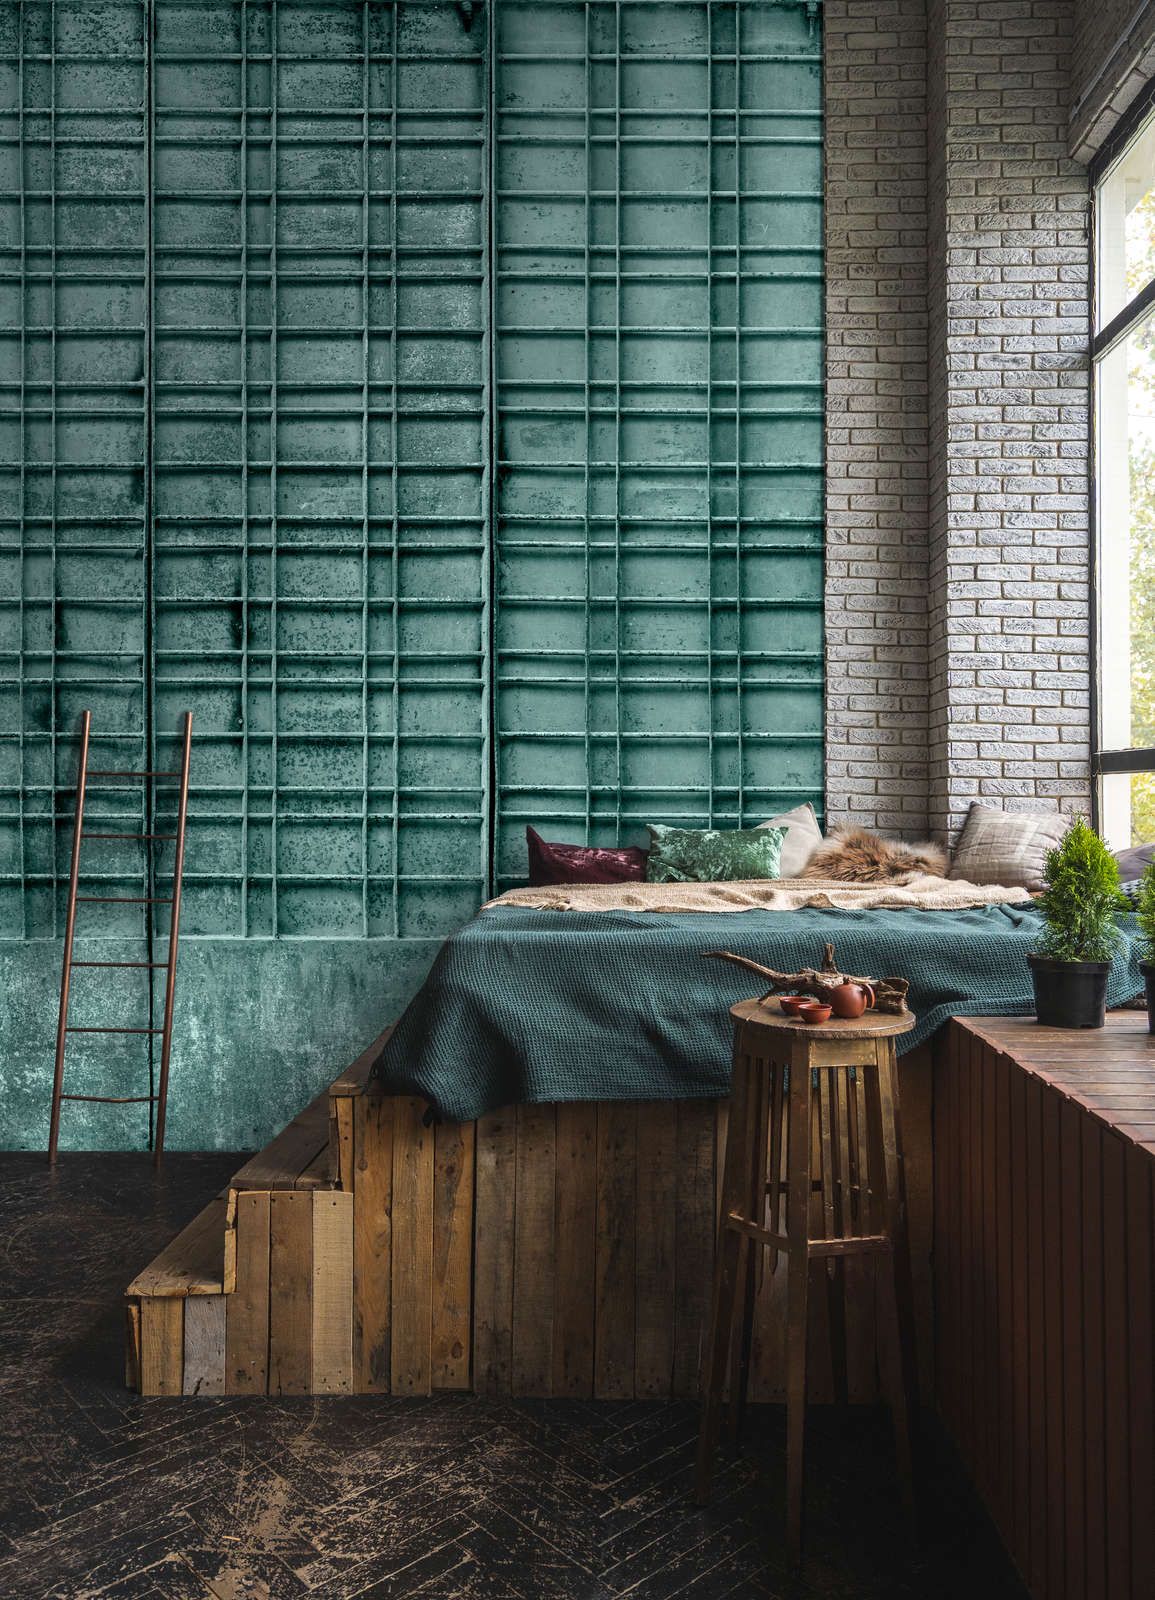             Digital behang »bangalore« - Close-up van een petrolkleurig metalen hek met rechthoekige decoraties - Glad, licht glanzend premium vliesdoek
        